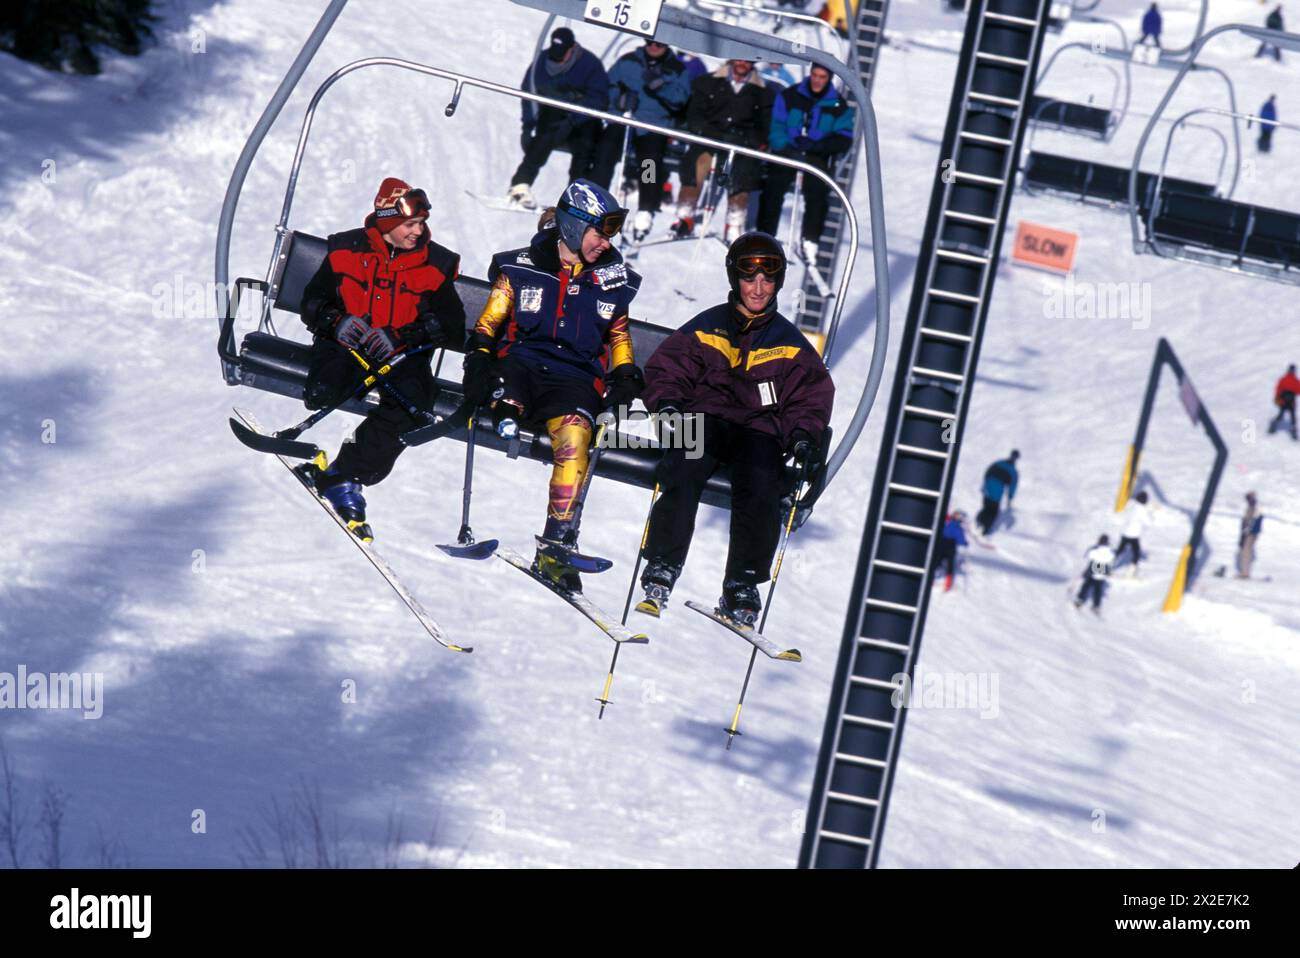 Behinderte Abfahrtsskifahrer Allison Jones, Training im Winter Park Resort, Colorado-Reiten Sessellift mit anderen behinderten Skifahrern Stockfoto